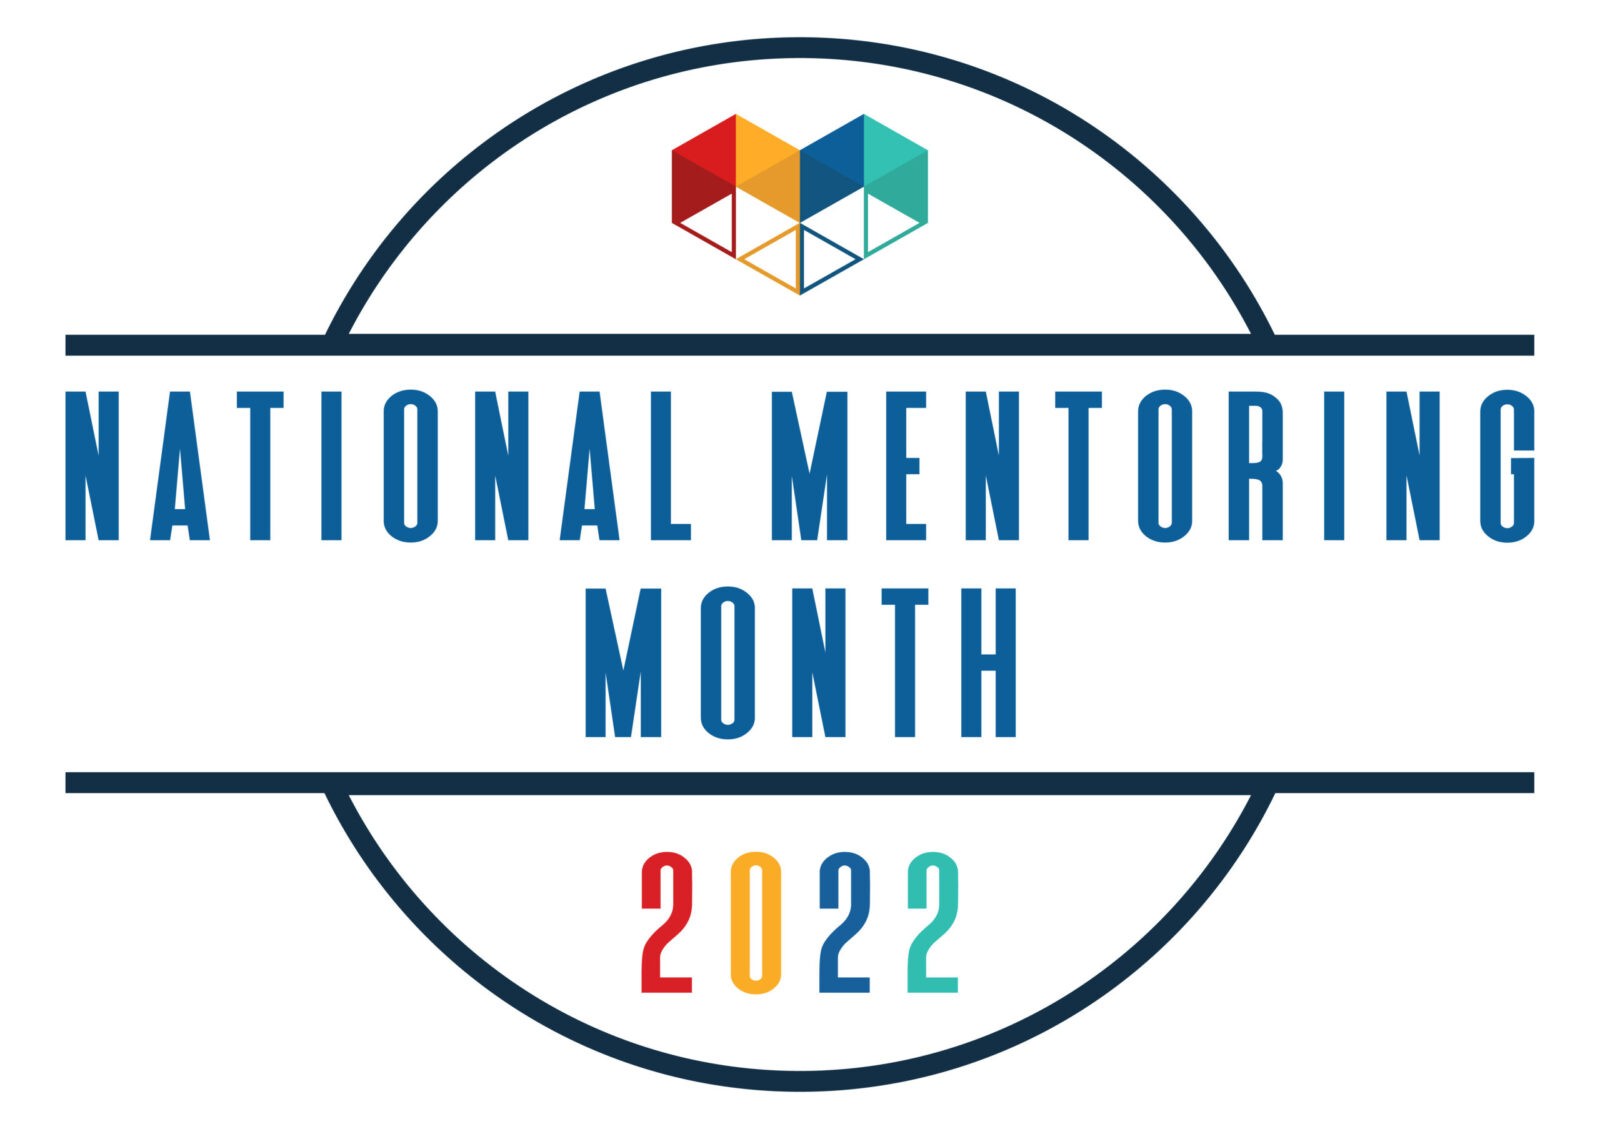 National Mentoring Month logo